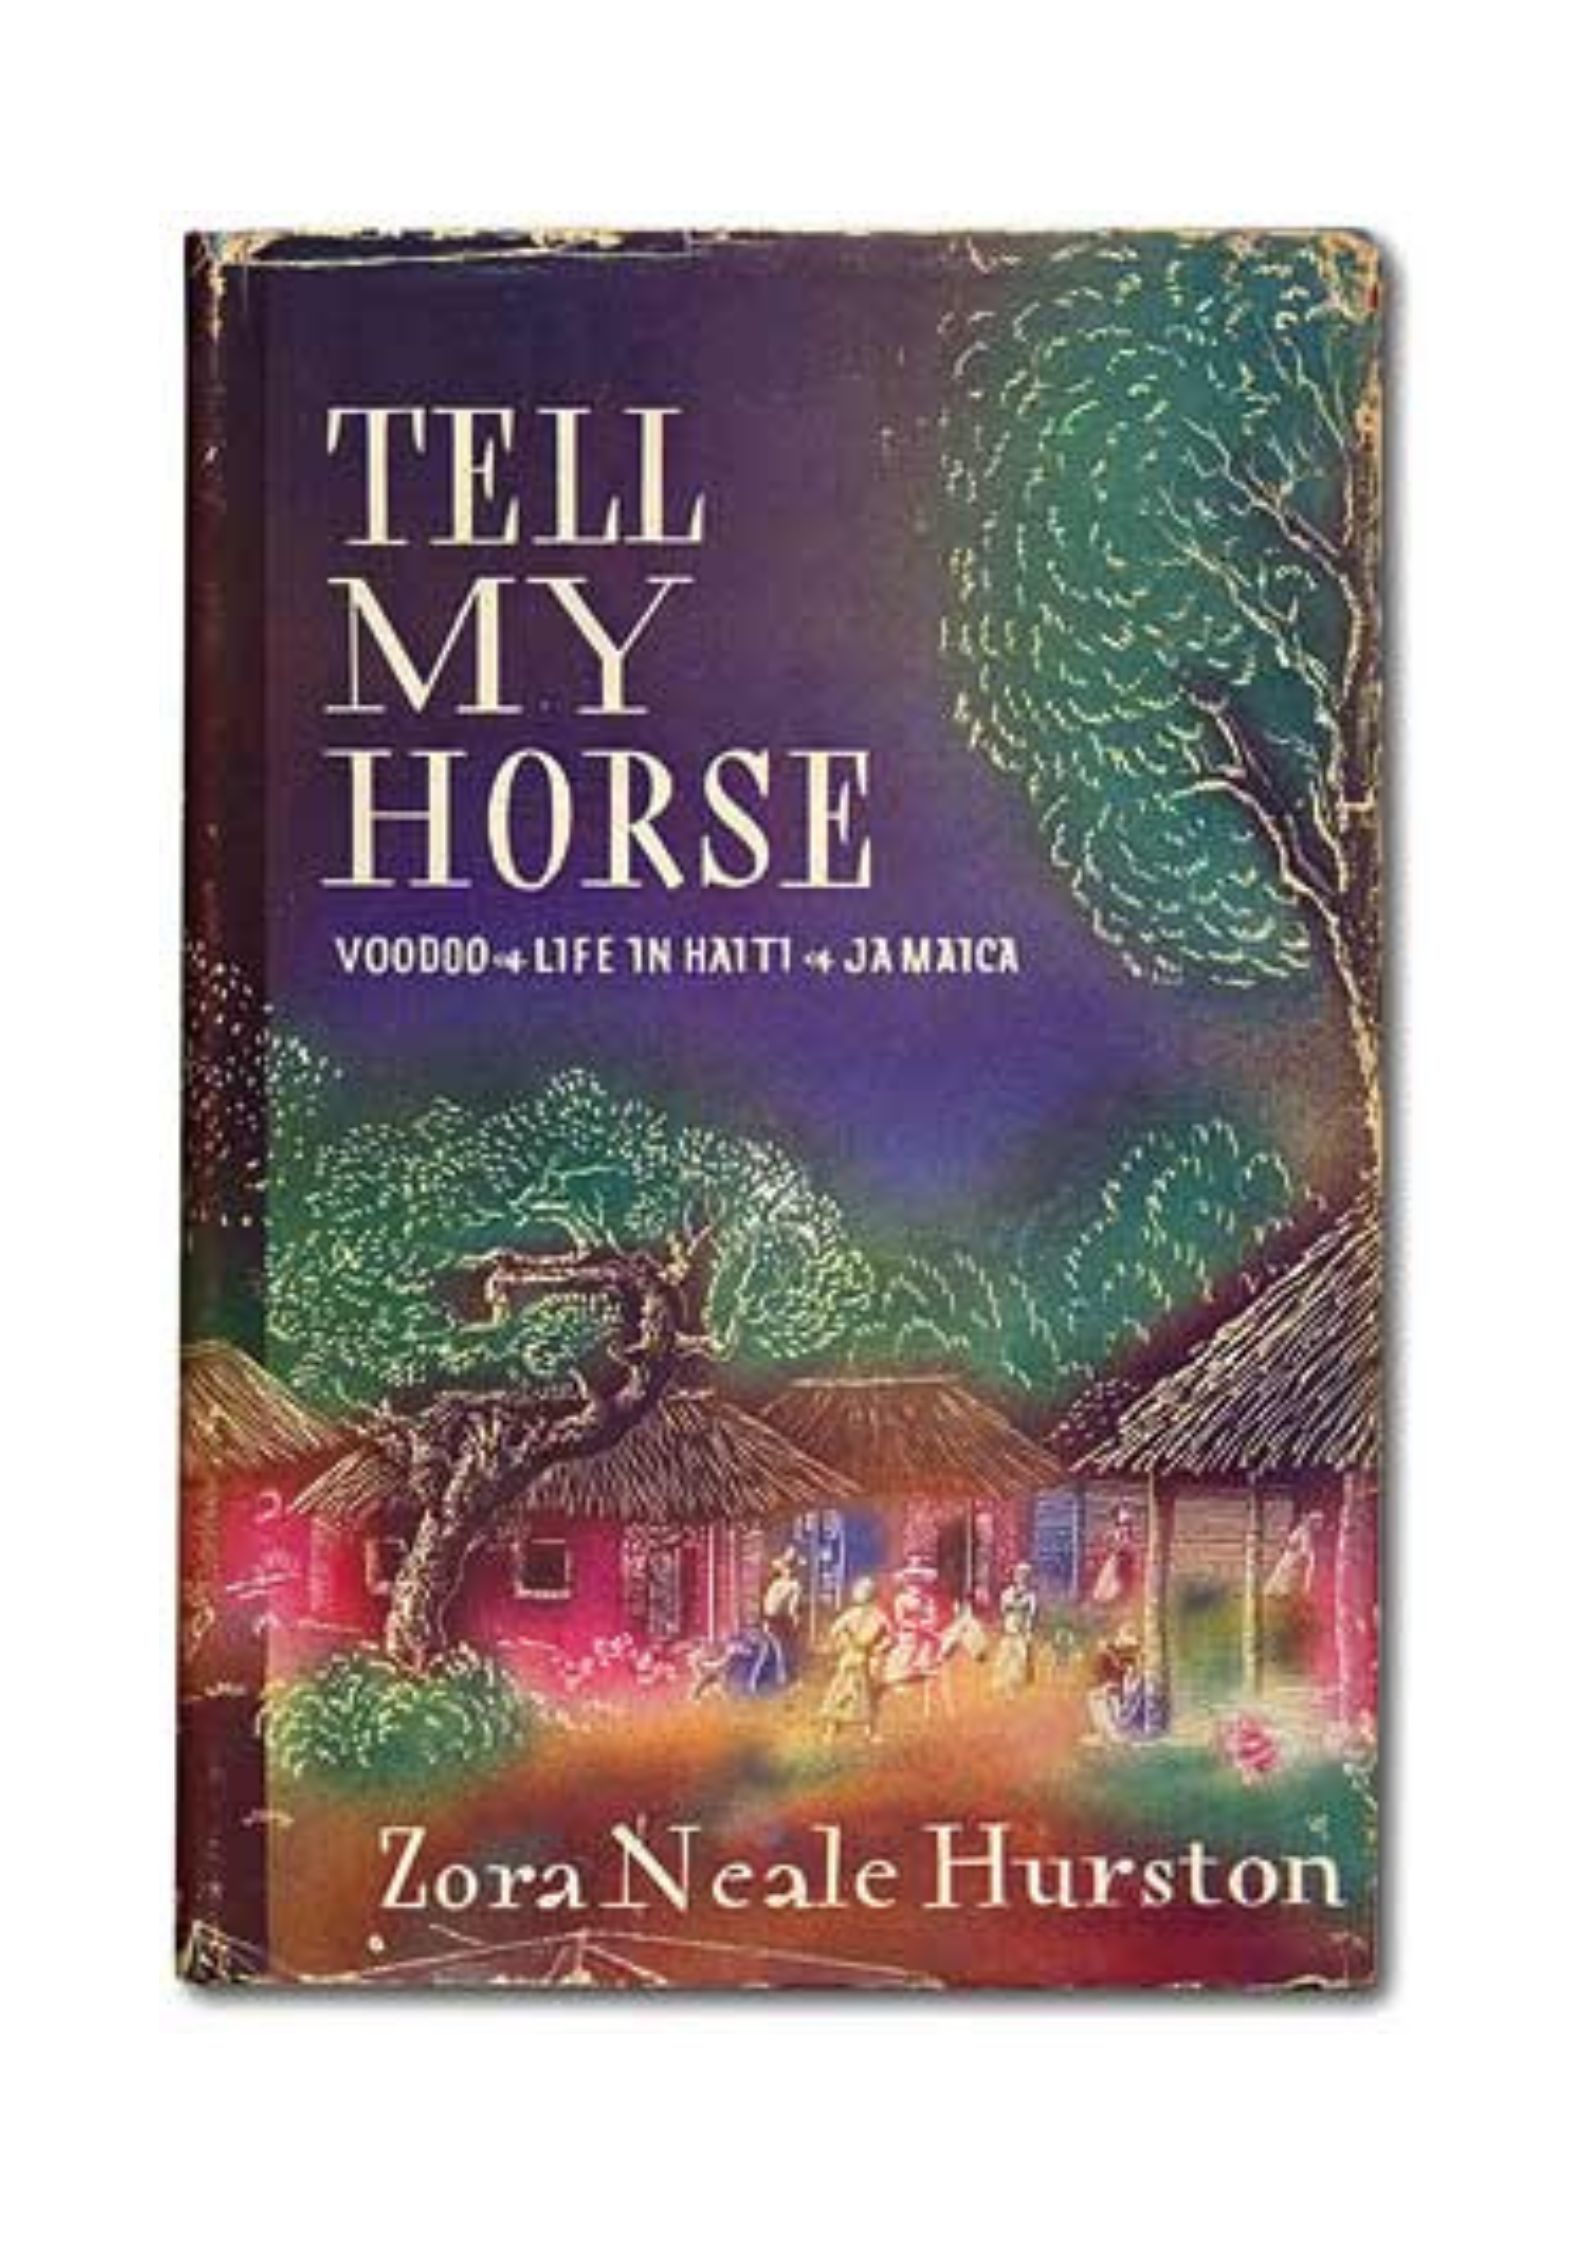 Zora Neale Hurston, Tell my horse – voodoo life in Haiti and Jamaica